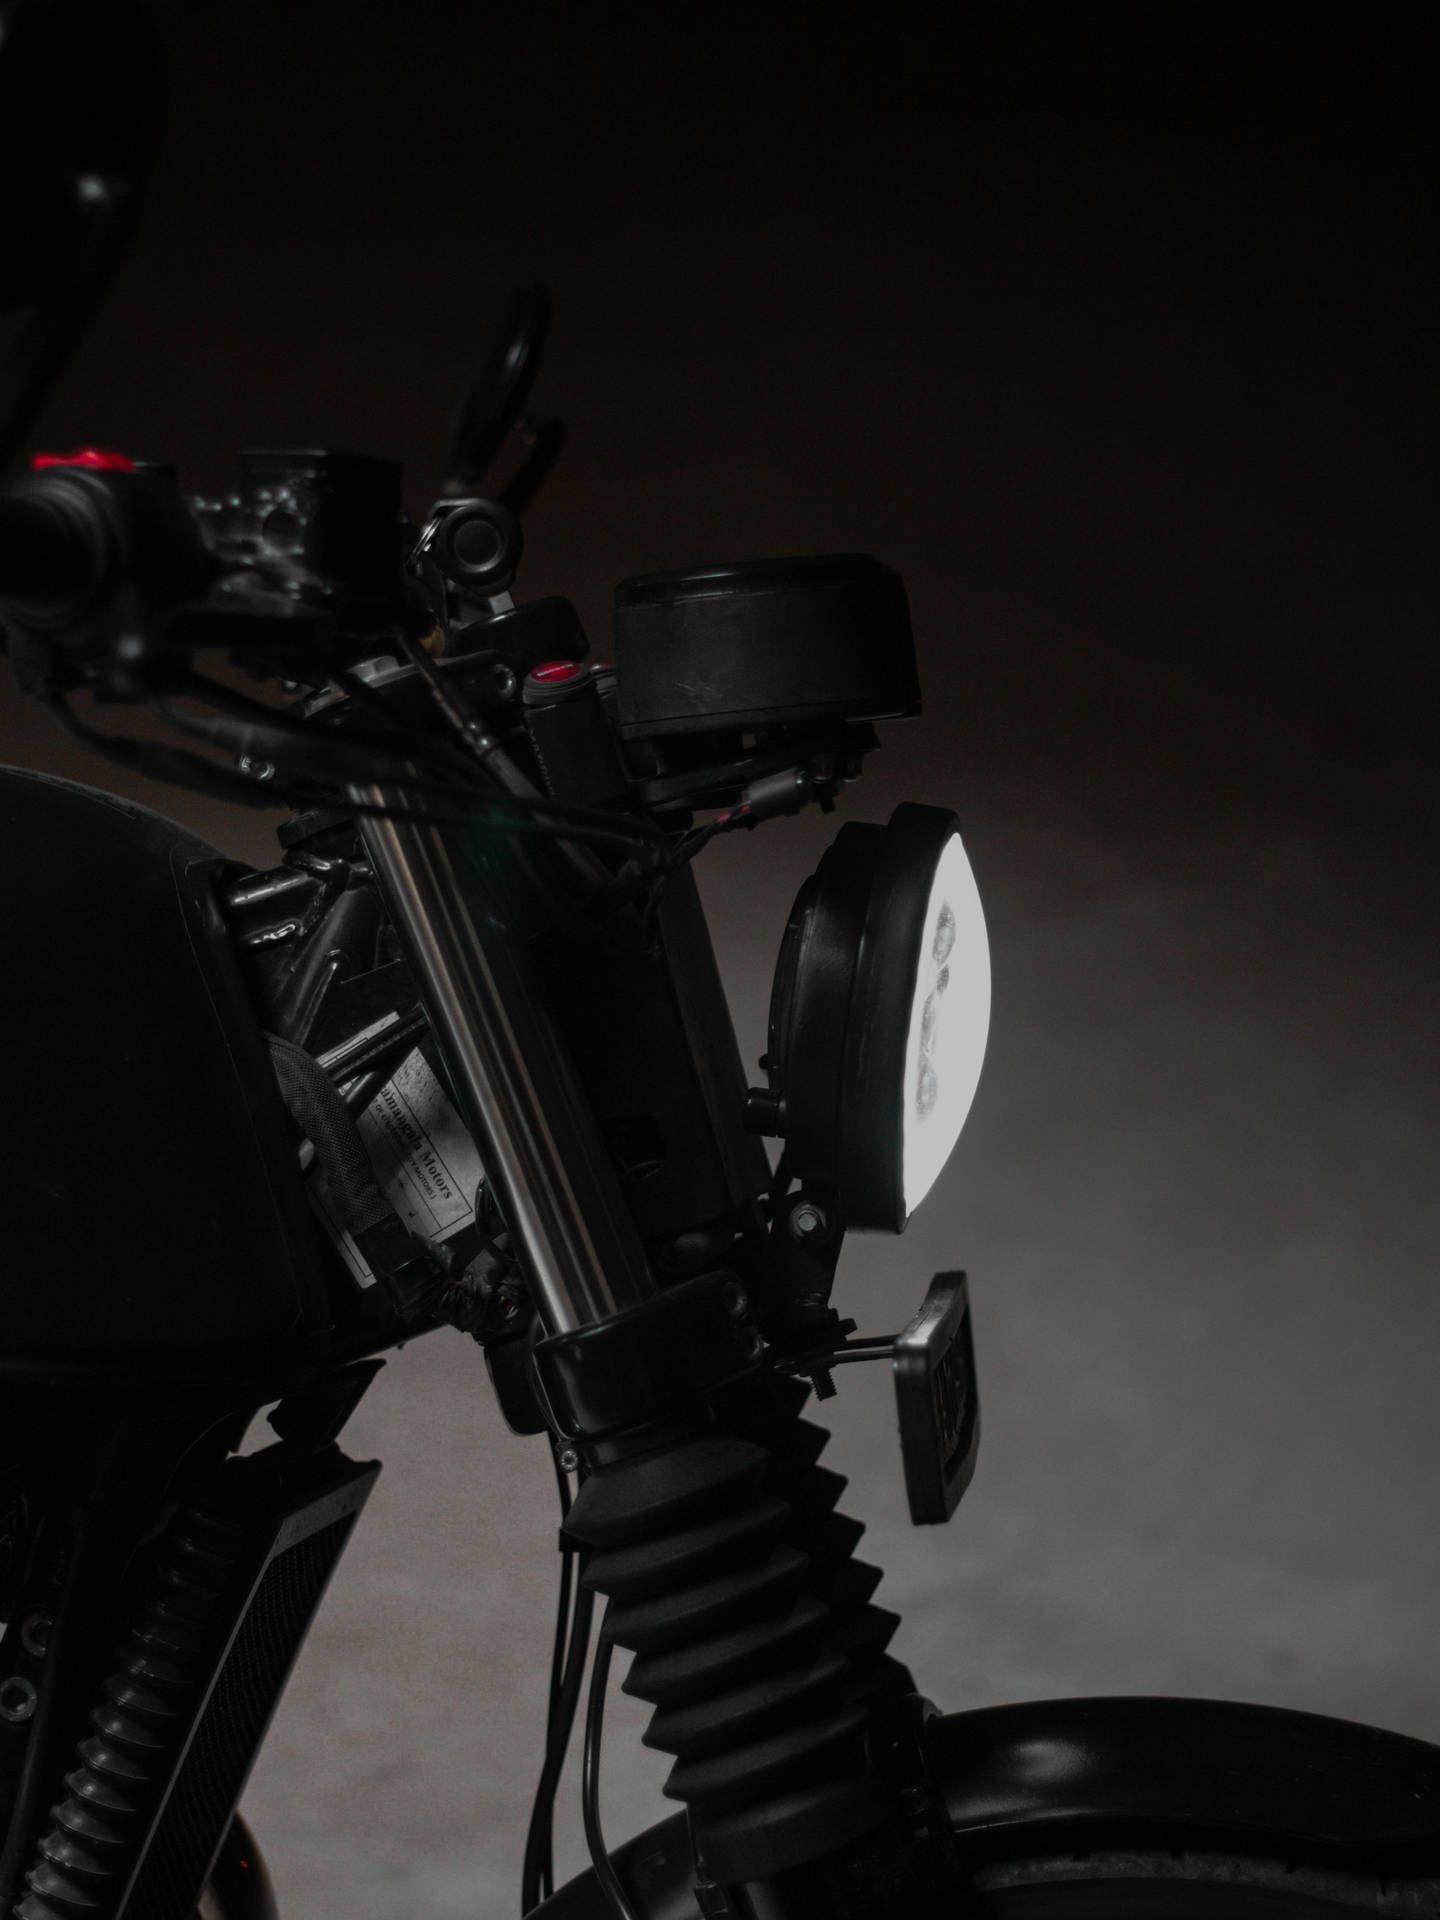  Motor Hintergrundbild 1440x1920. Download Dark Aesthetic iPhone Motorcycle Wallpaper